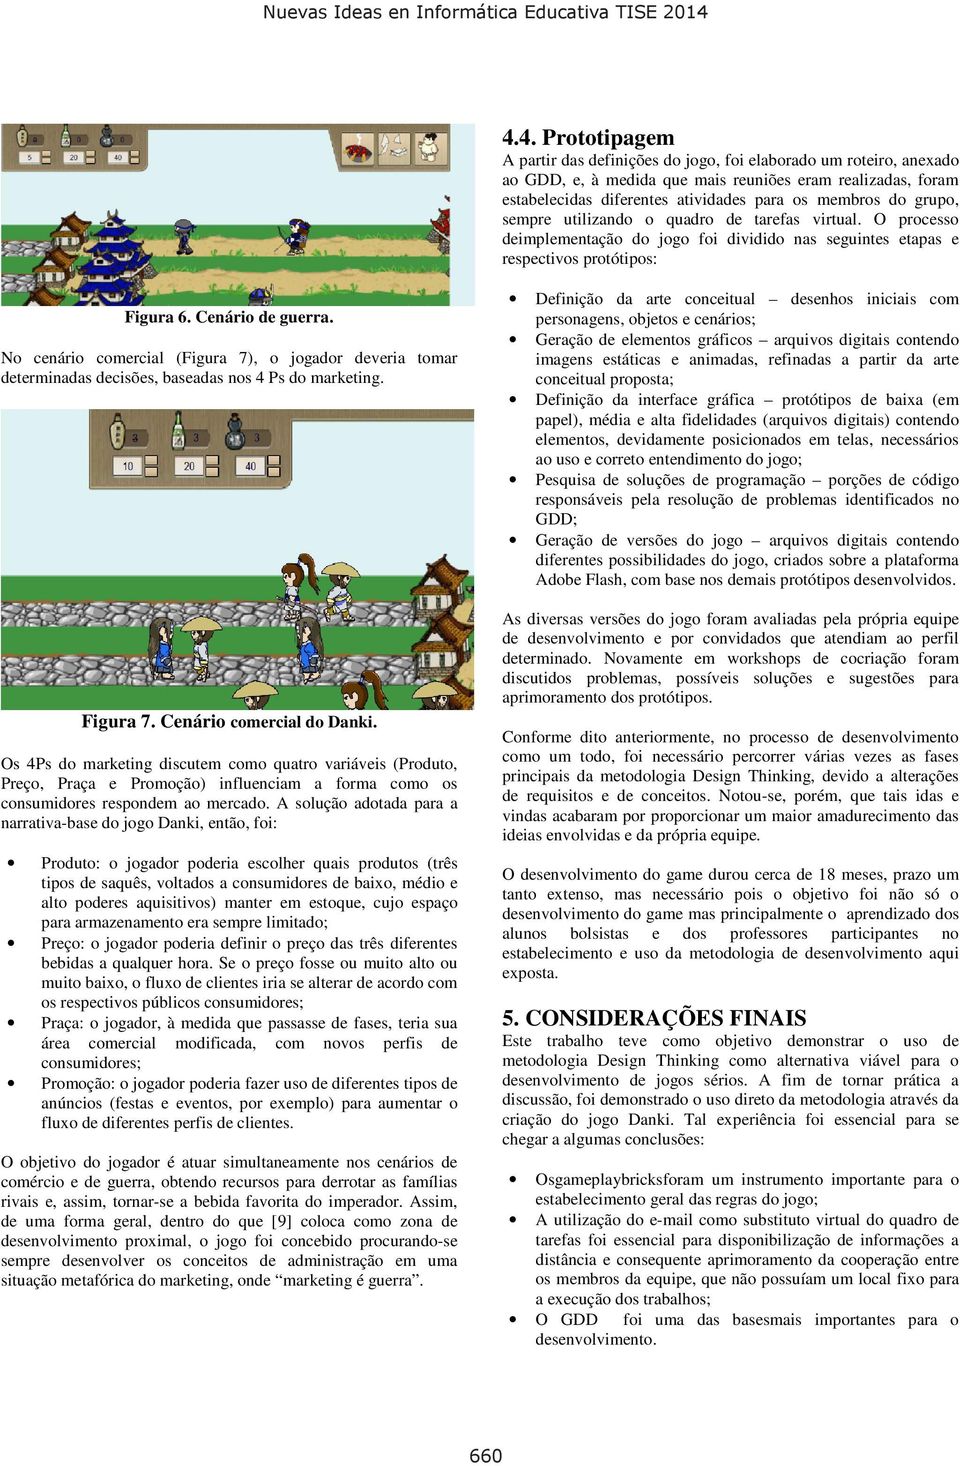 No cenário comercial (Figura 7), o jogador deveria tomar determinadas decisões, baseadas nos 4 Ps do marketing. Figura 7. Cenário comercial do Danki.